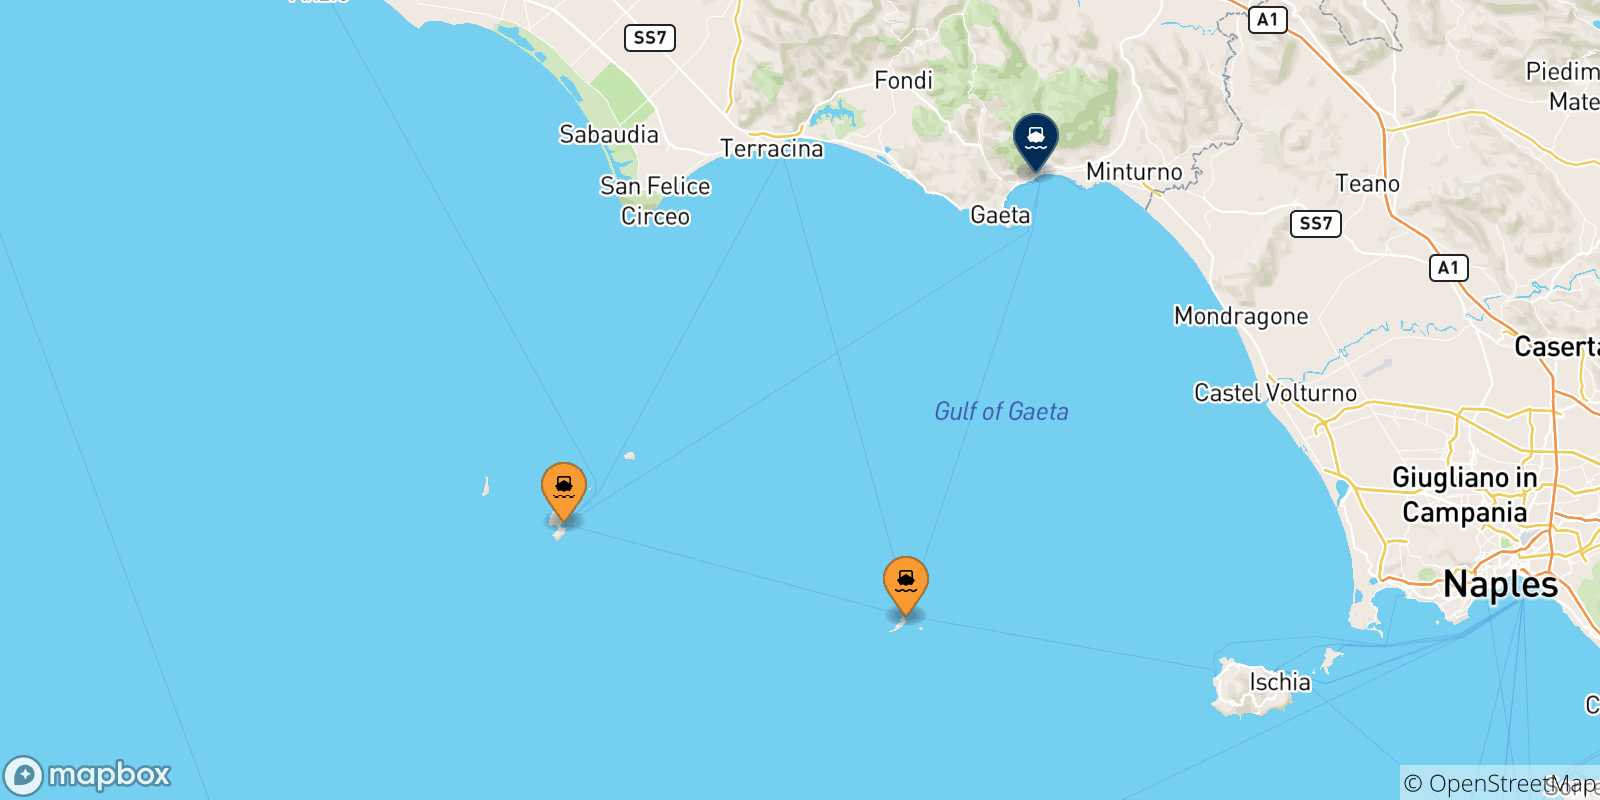 Mappa delle possibili rotte tra le Isole Pontine e Formia